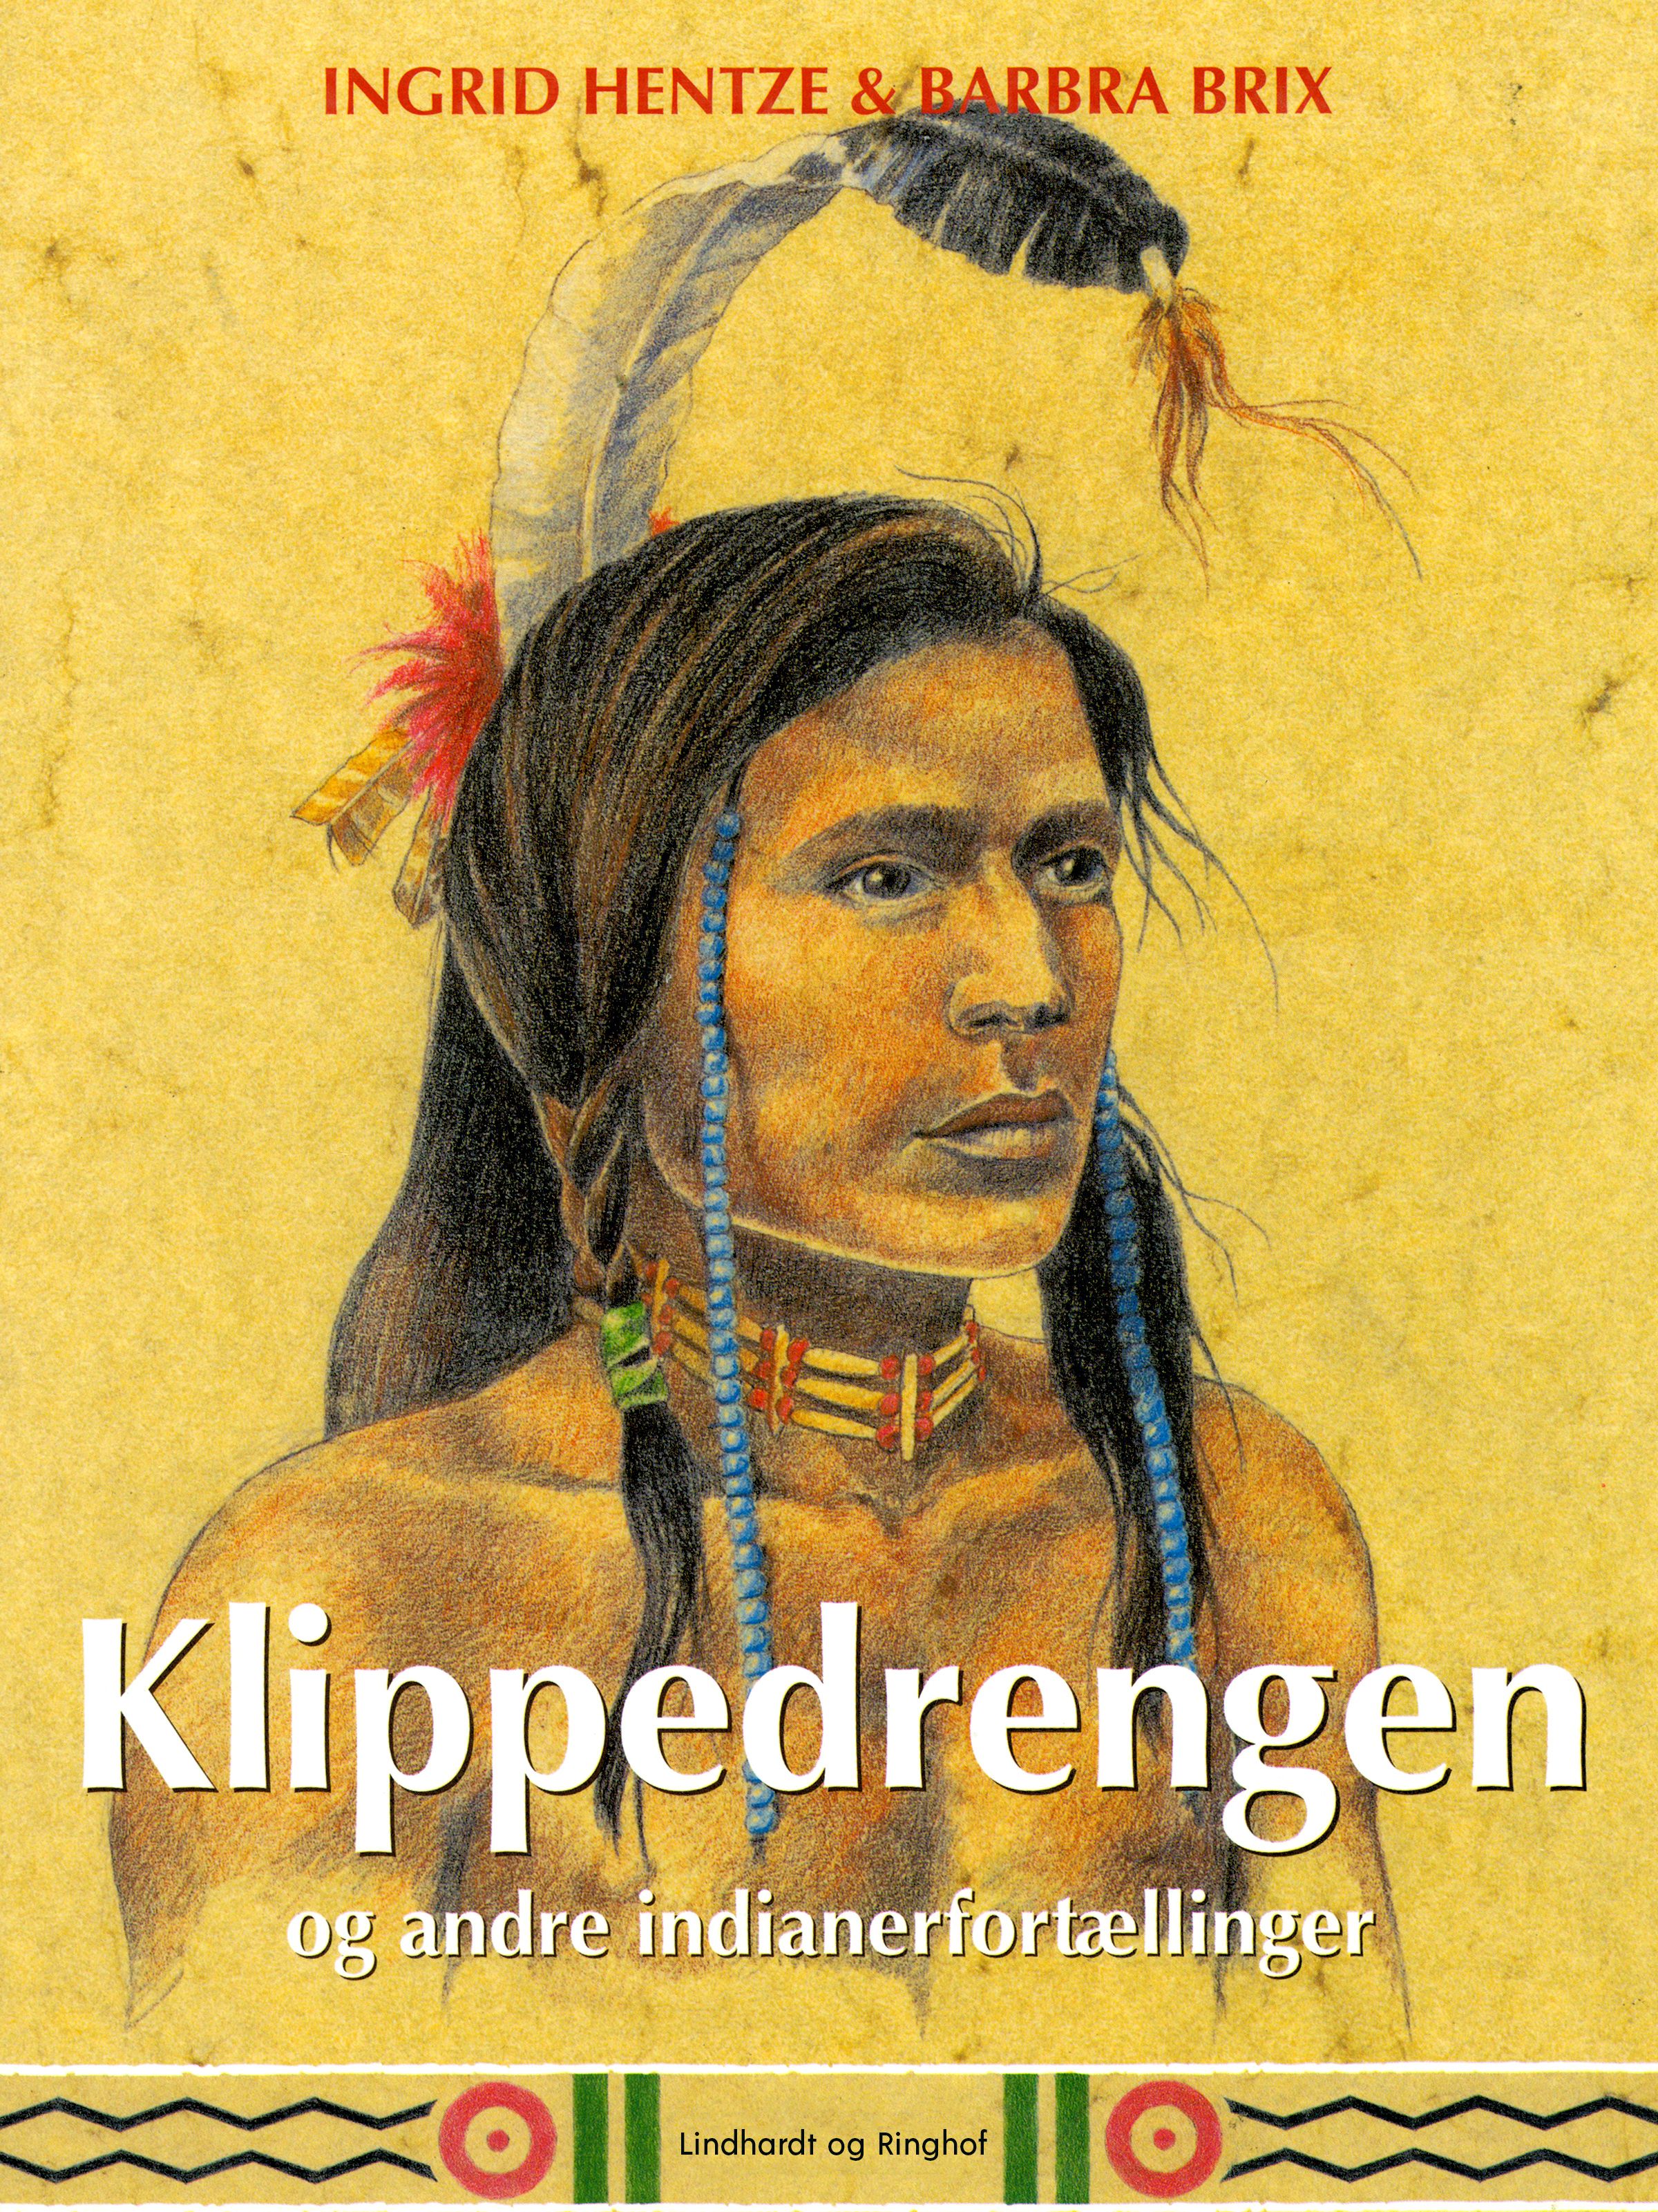 Klippedrengen og andre indianerfortællinger, e-bok av Ingrid Hentze